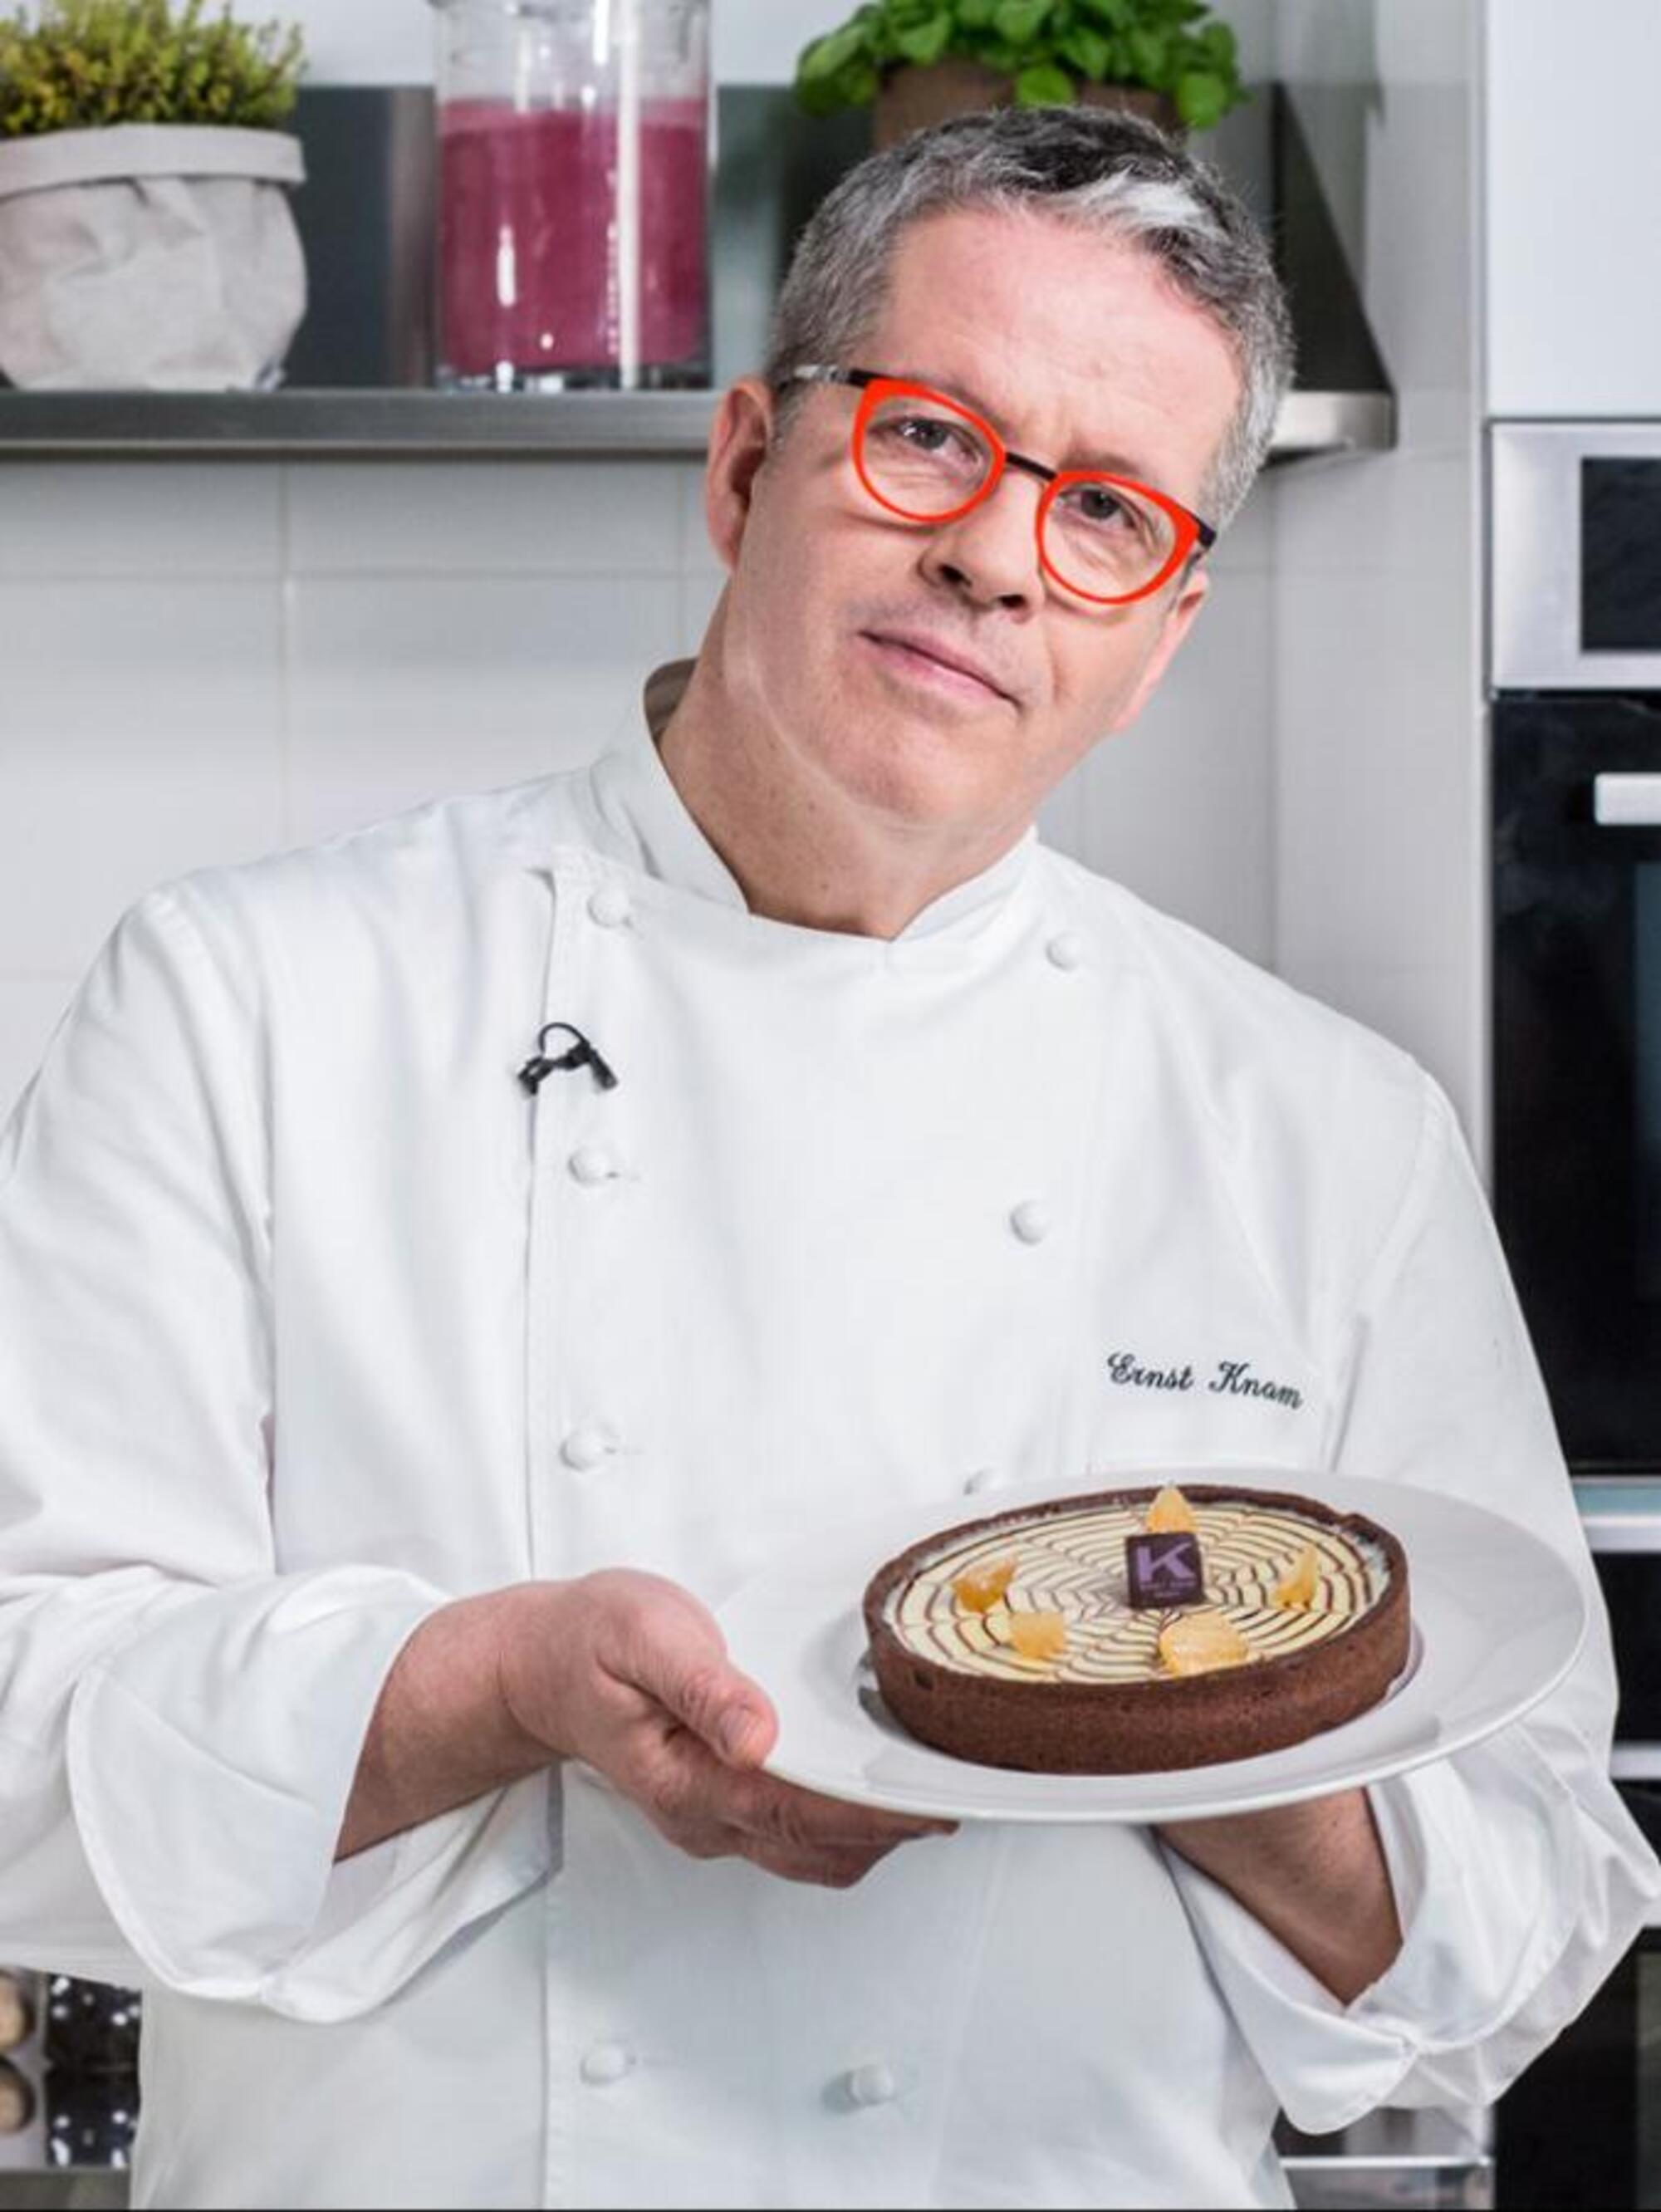 Il pasticcere Ernst Knam del programma Bake Off Italia con una sua creazione dolciaria